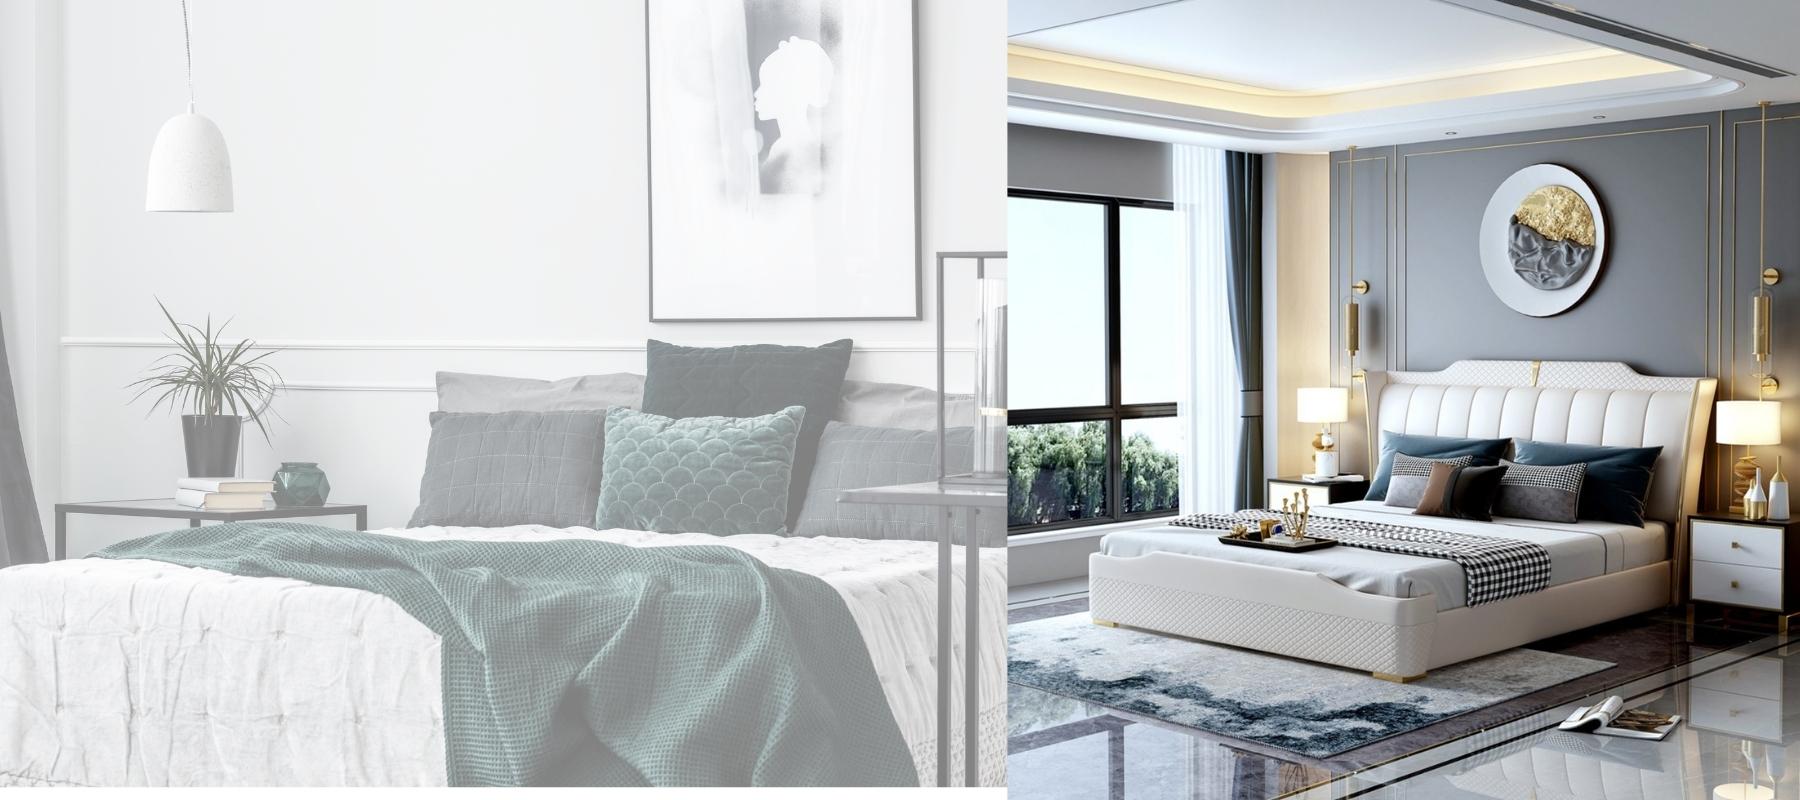 Exclusive Designer Beds for High End Bedrooms-Elegant Interior Australia